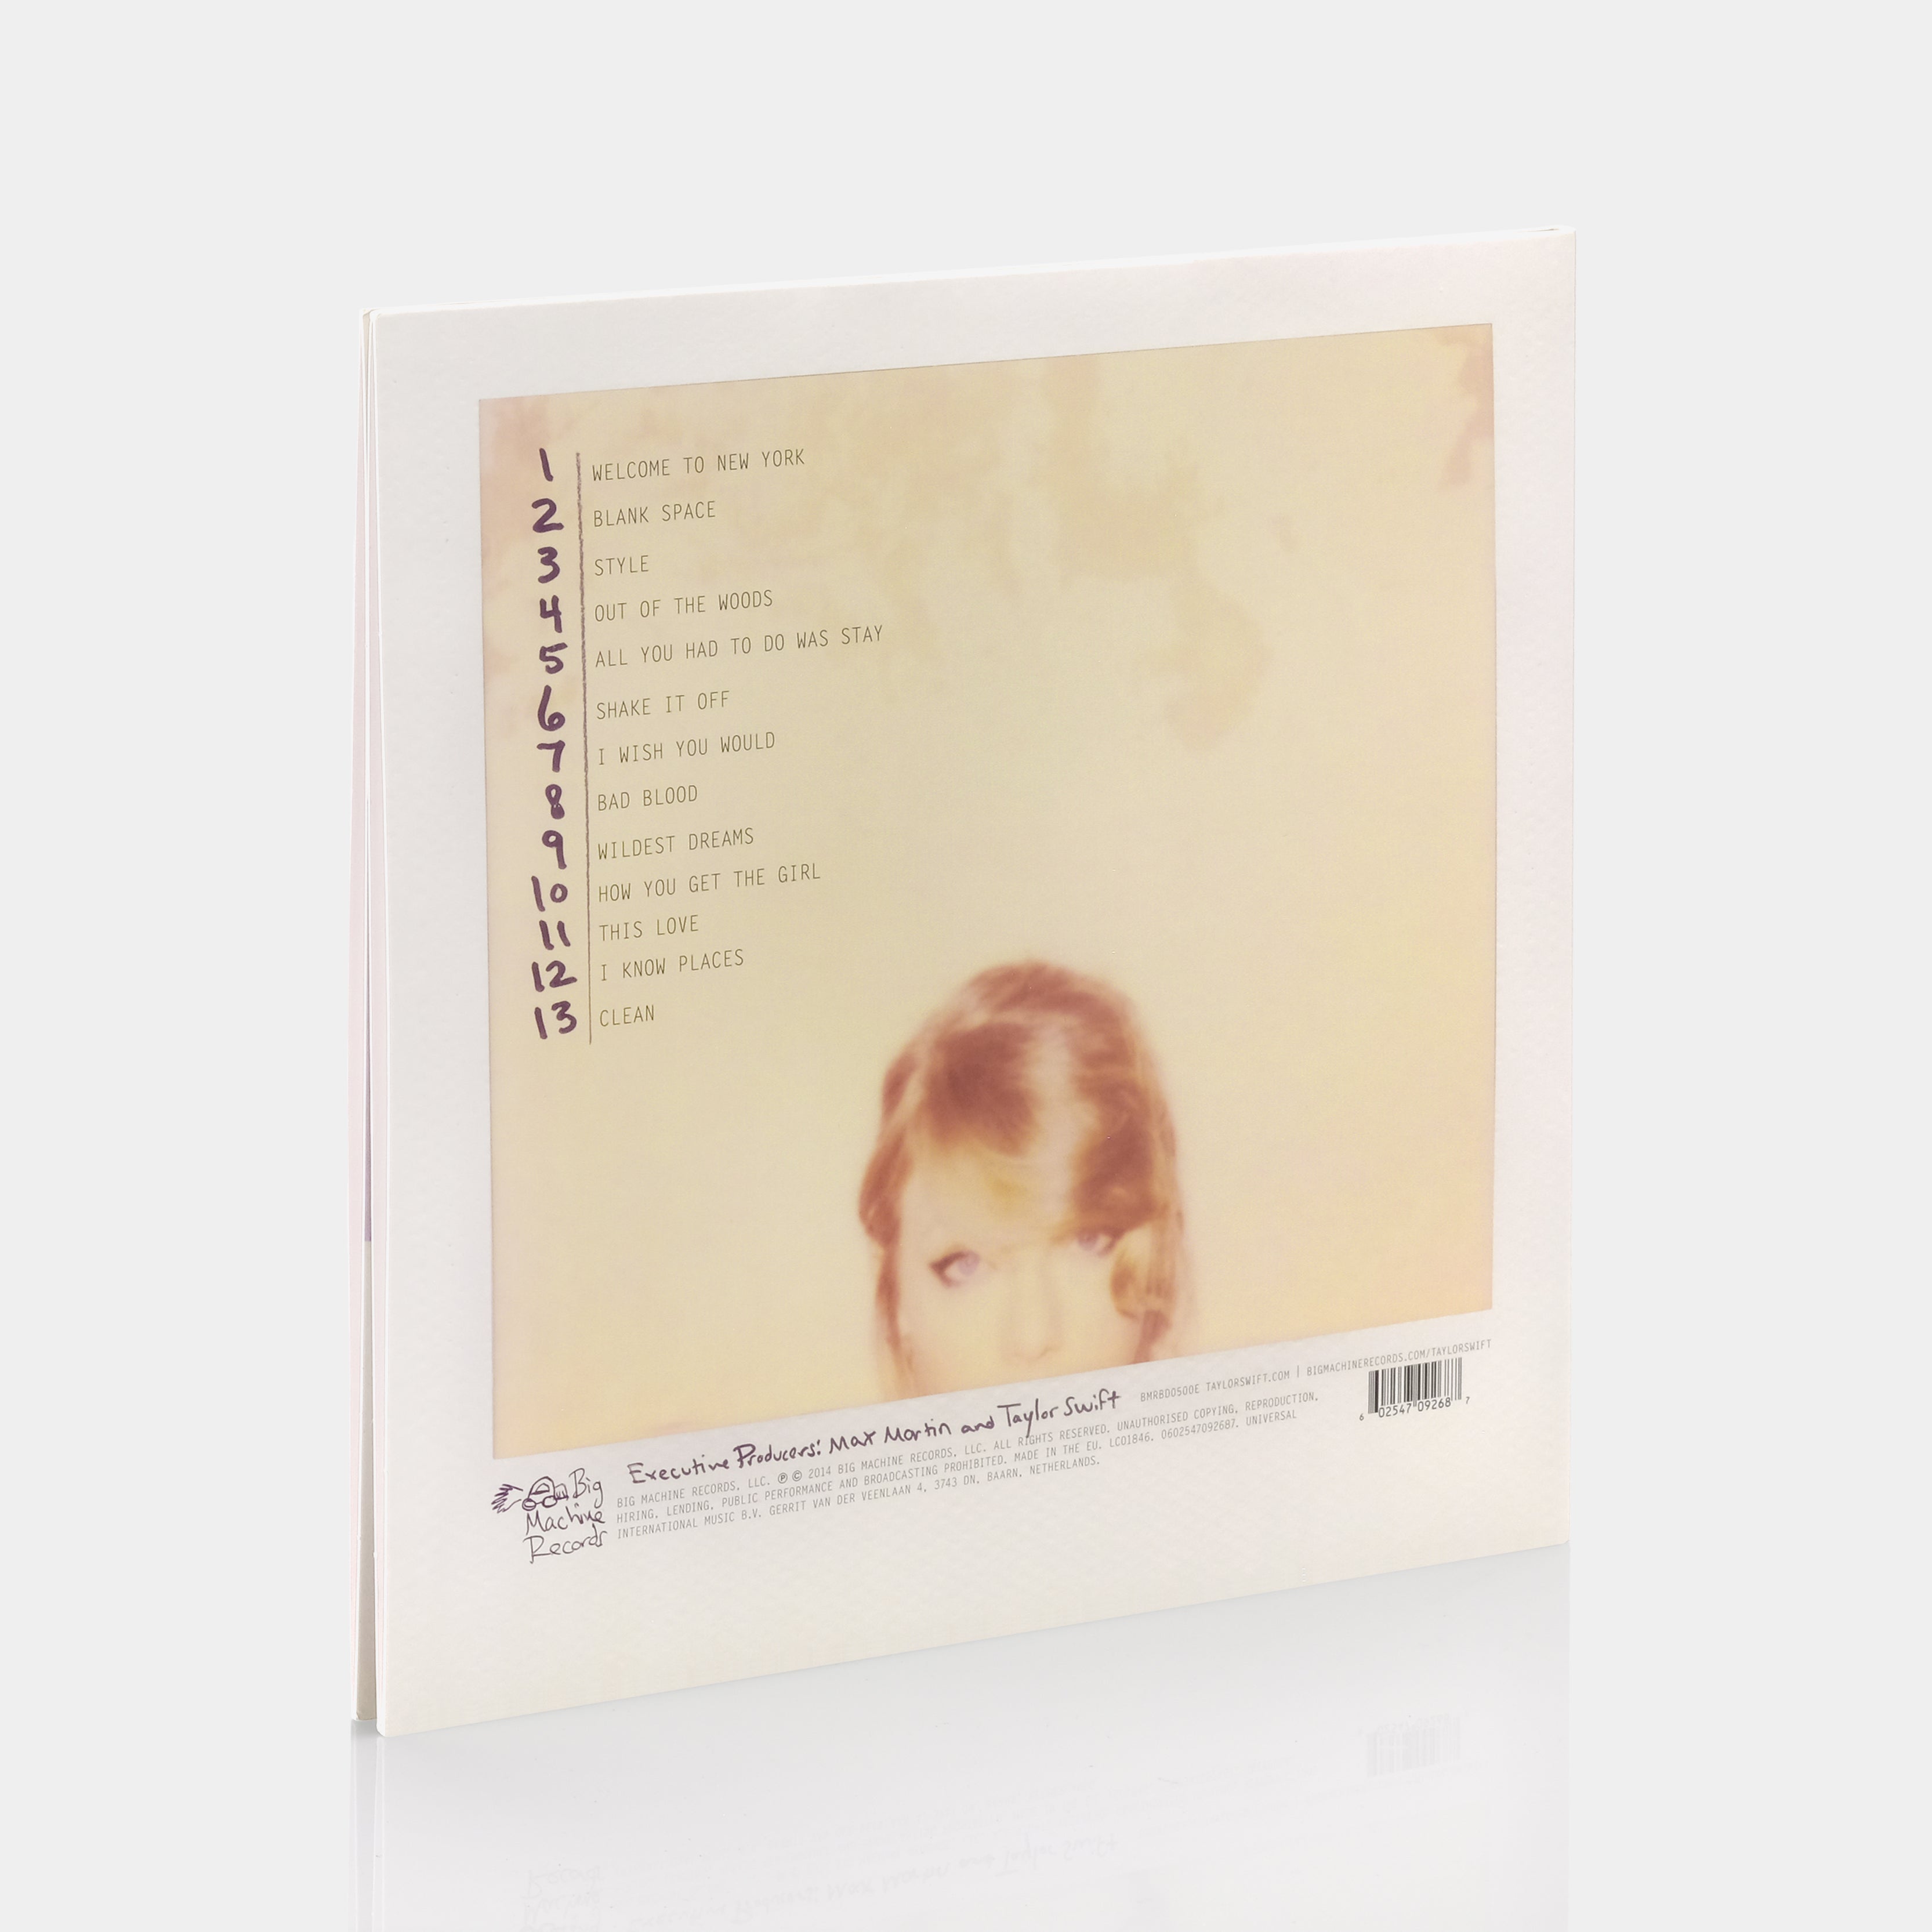 Taylor Swift - 1989 2xLP Vinyl Record